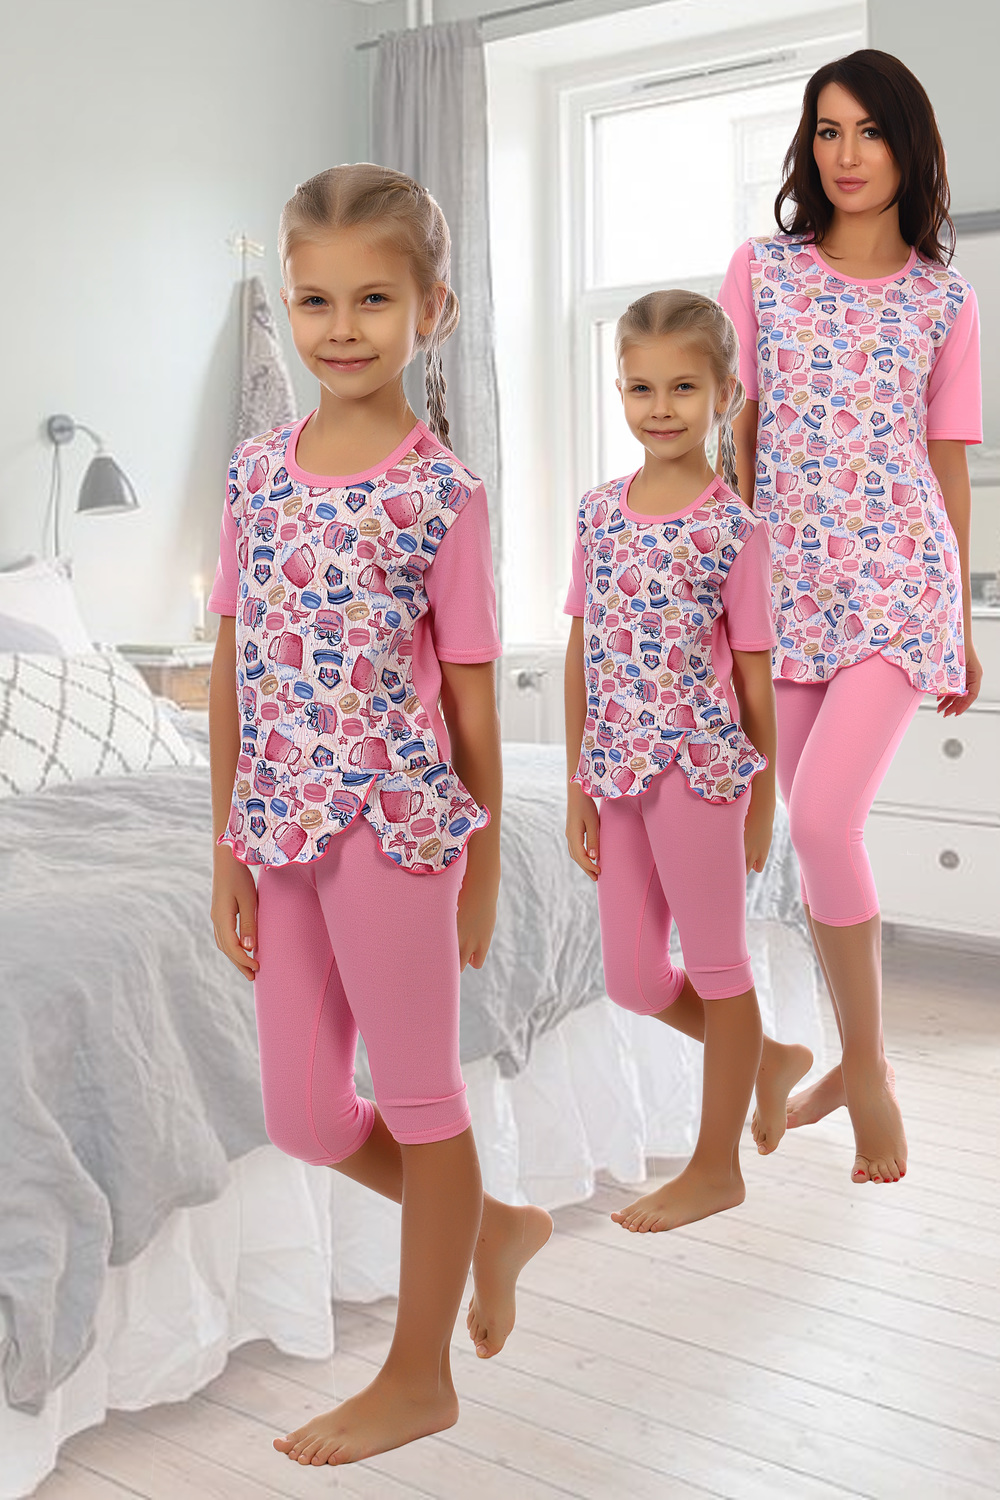 Пижама р. Детские пижамы. Дети в пижамах. Детские пижамы для девочек. Пижама для девочки 3 года.